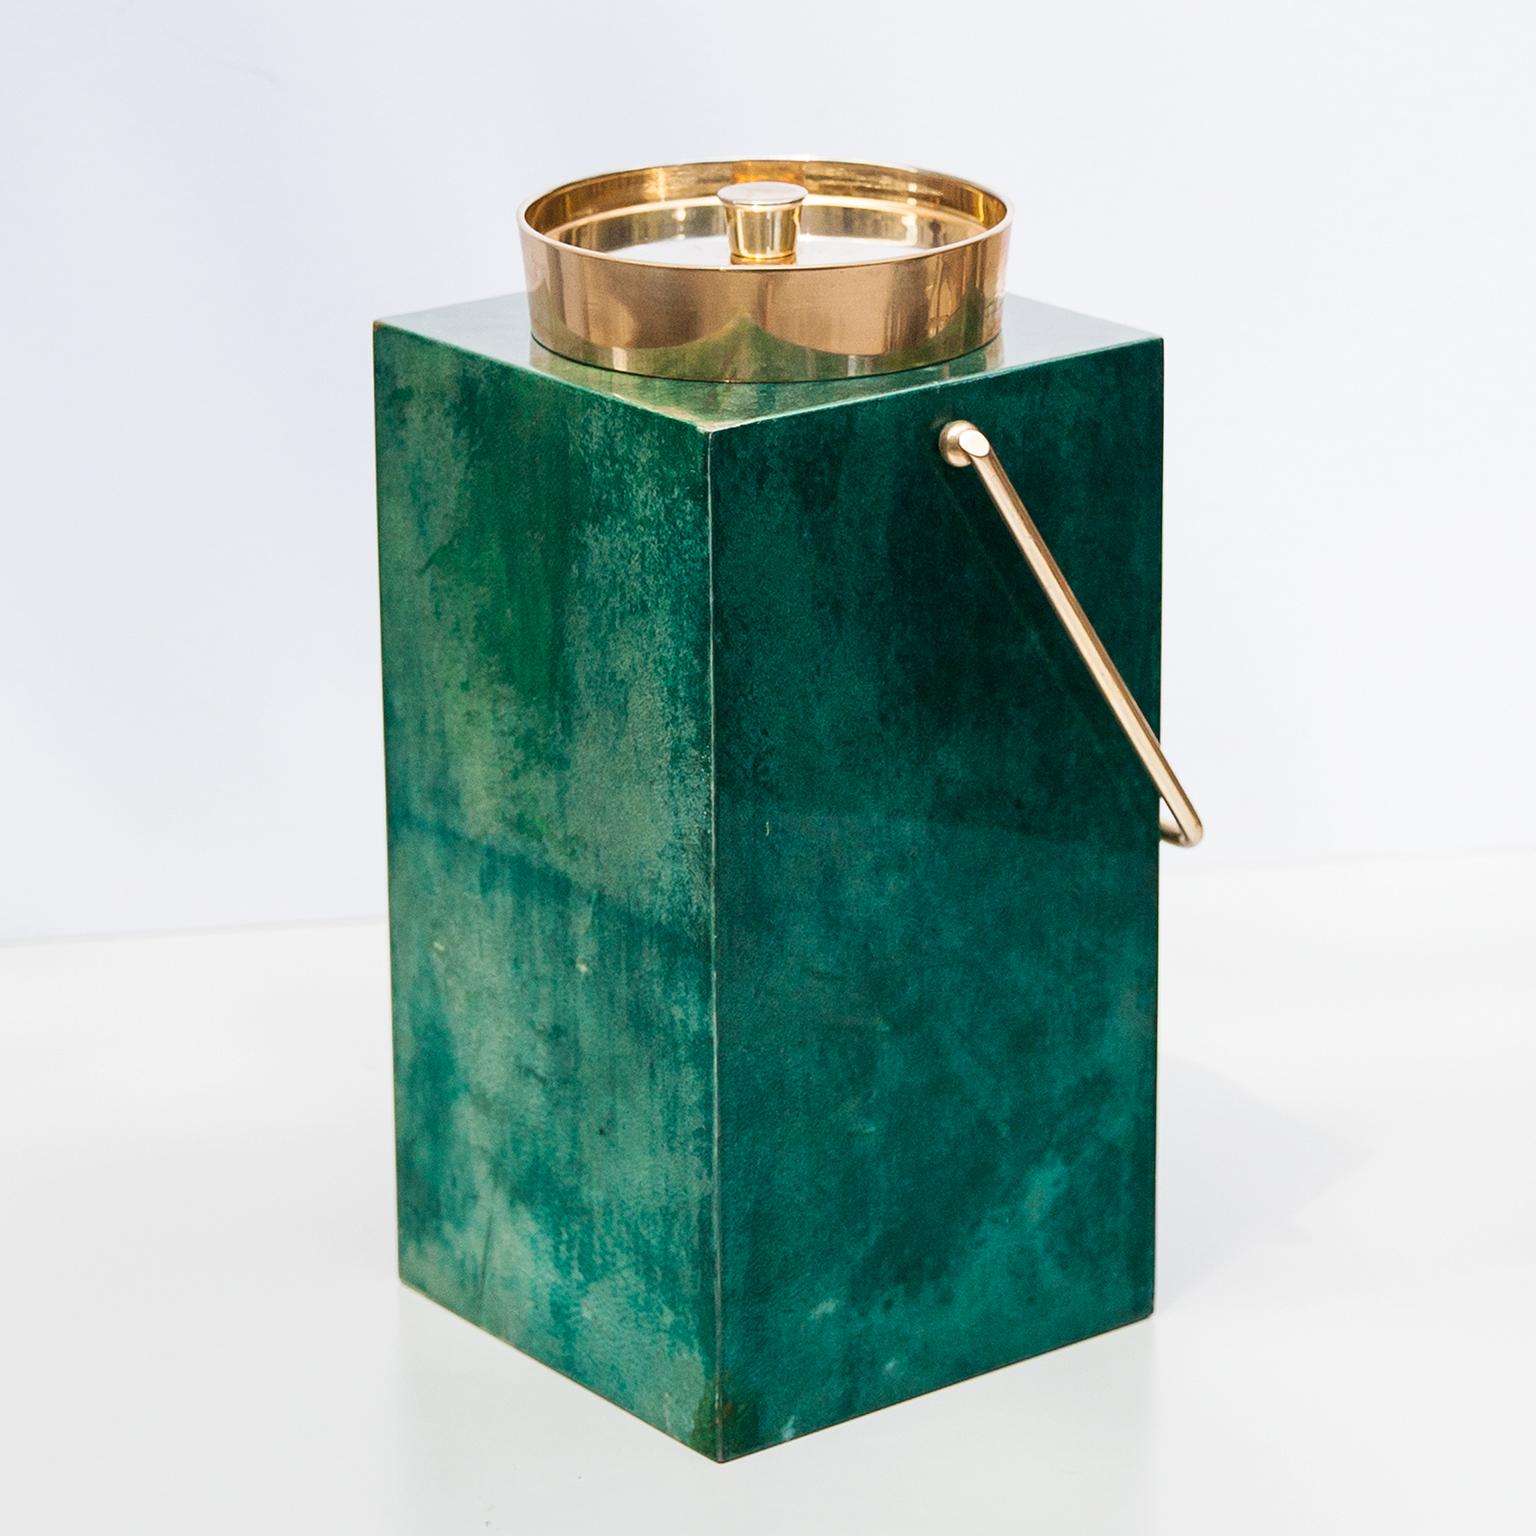 Großer Aldo Tura Champagner-, Weinkühler oder Eiskübel aus grünem Pergament mit Messingeinlage. Diese Kühlbox wurde in den 1960er Jahren hergestellt und befindet sich in einem ausgezeichneten Vintage-Zustand.
Zusammen mit Künstlern wie Piero